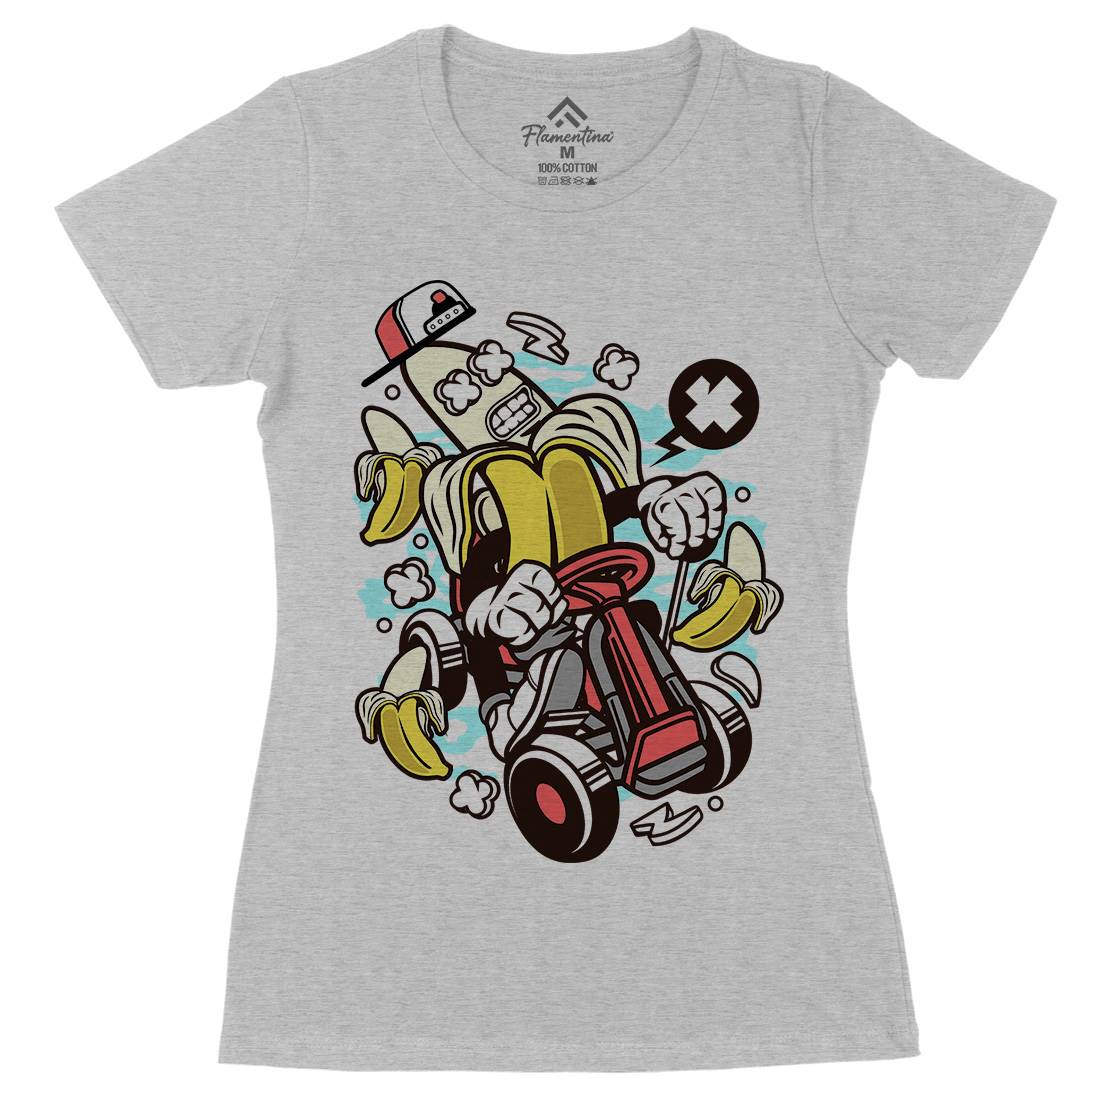 Banana Go-Kart Rider Womens Organic Crew Neck T-Shirt Sport C015